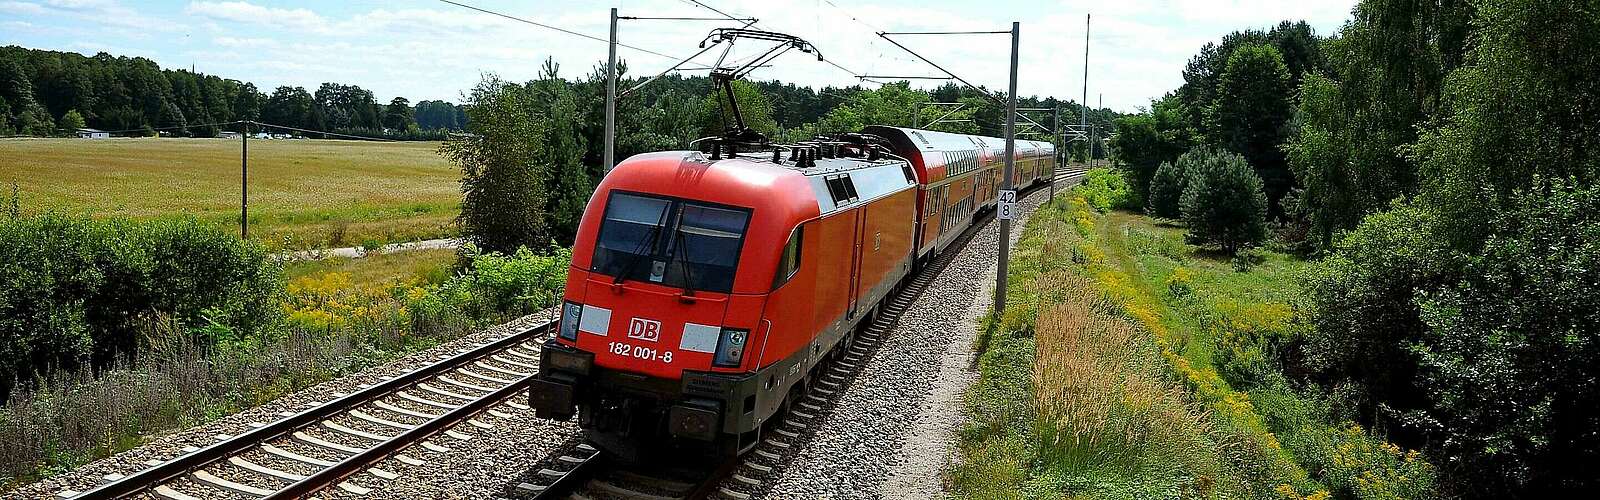 Regionalexpress von DB Regio Nordost,
        
    

        Picture: Fotograf / Lizenz - Media Import/Jet-Foto Kranert